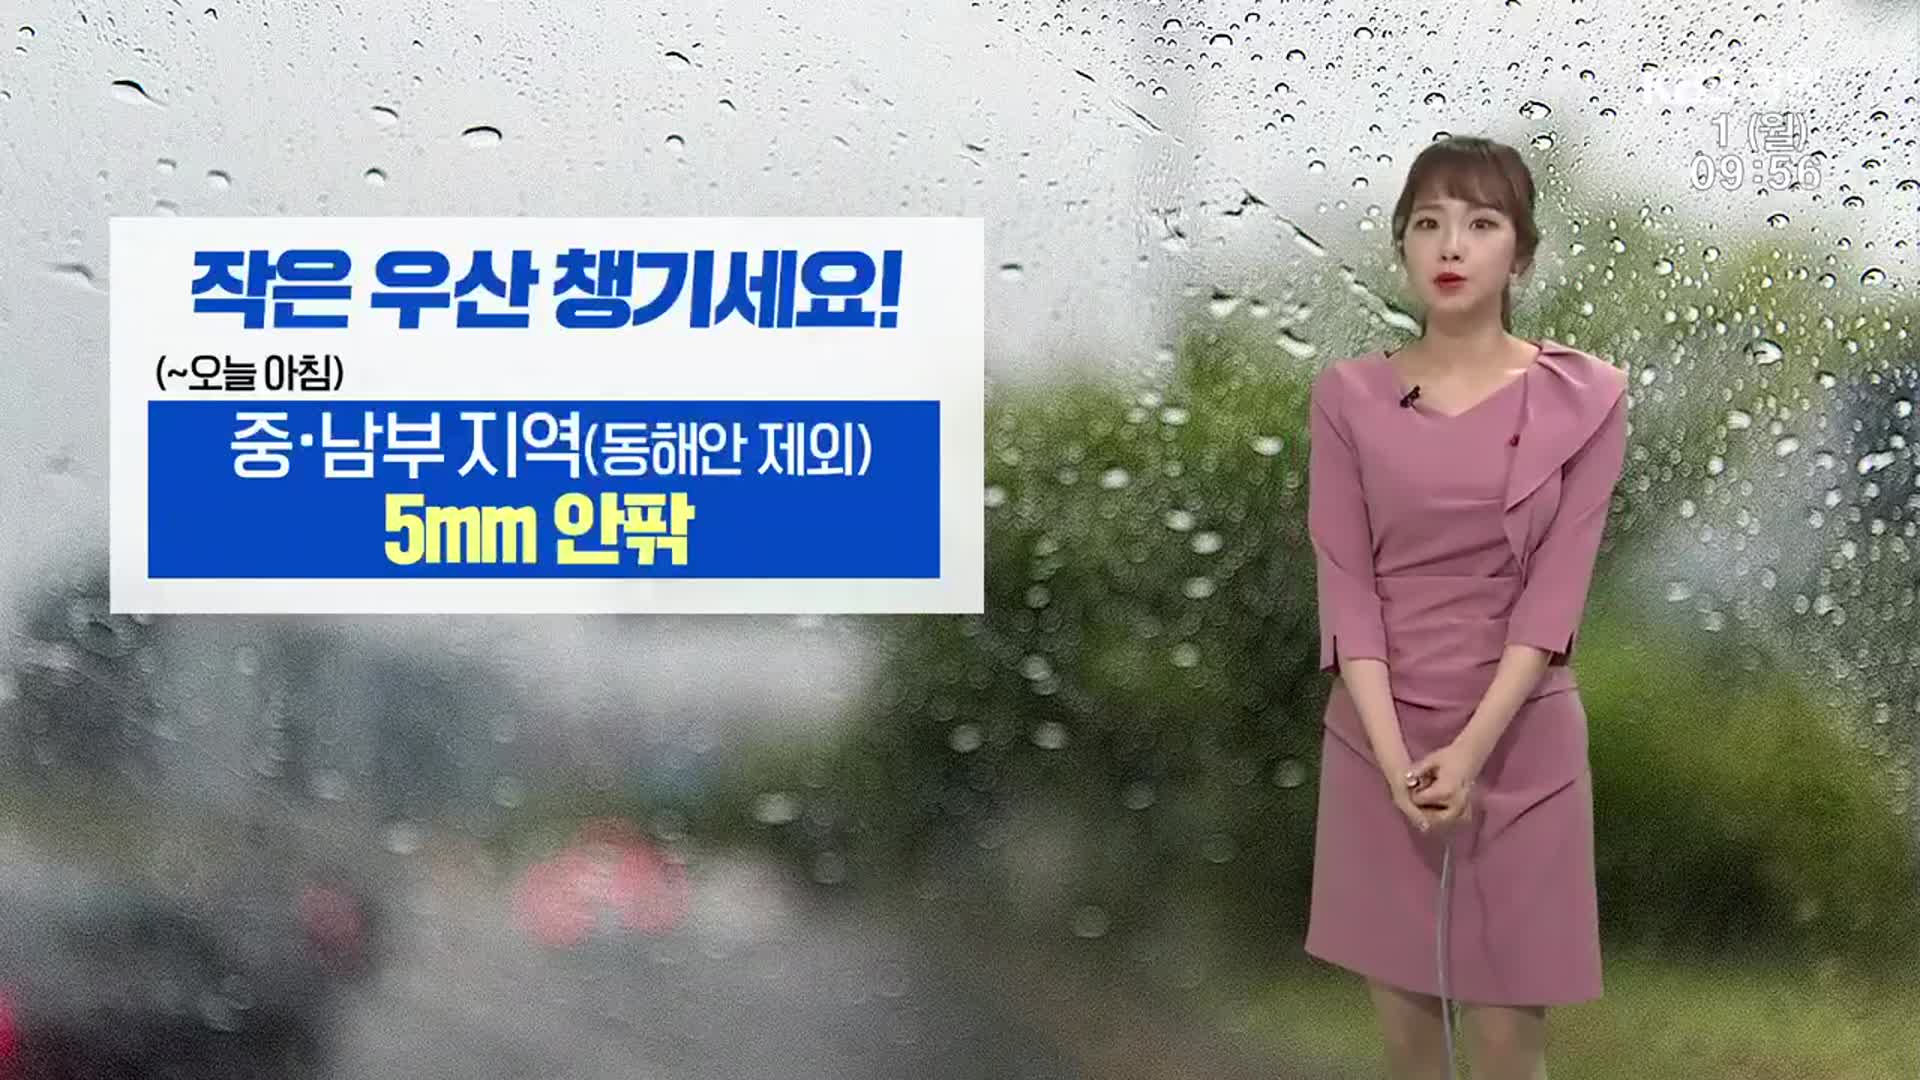 [날씨] ‘작은 우산 챙기세요’…강원 미세먼지 ‘나쁨’